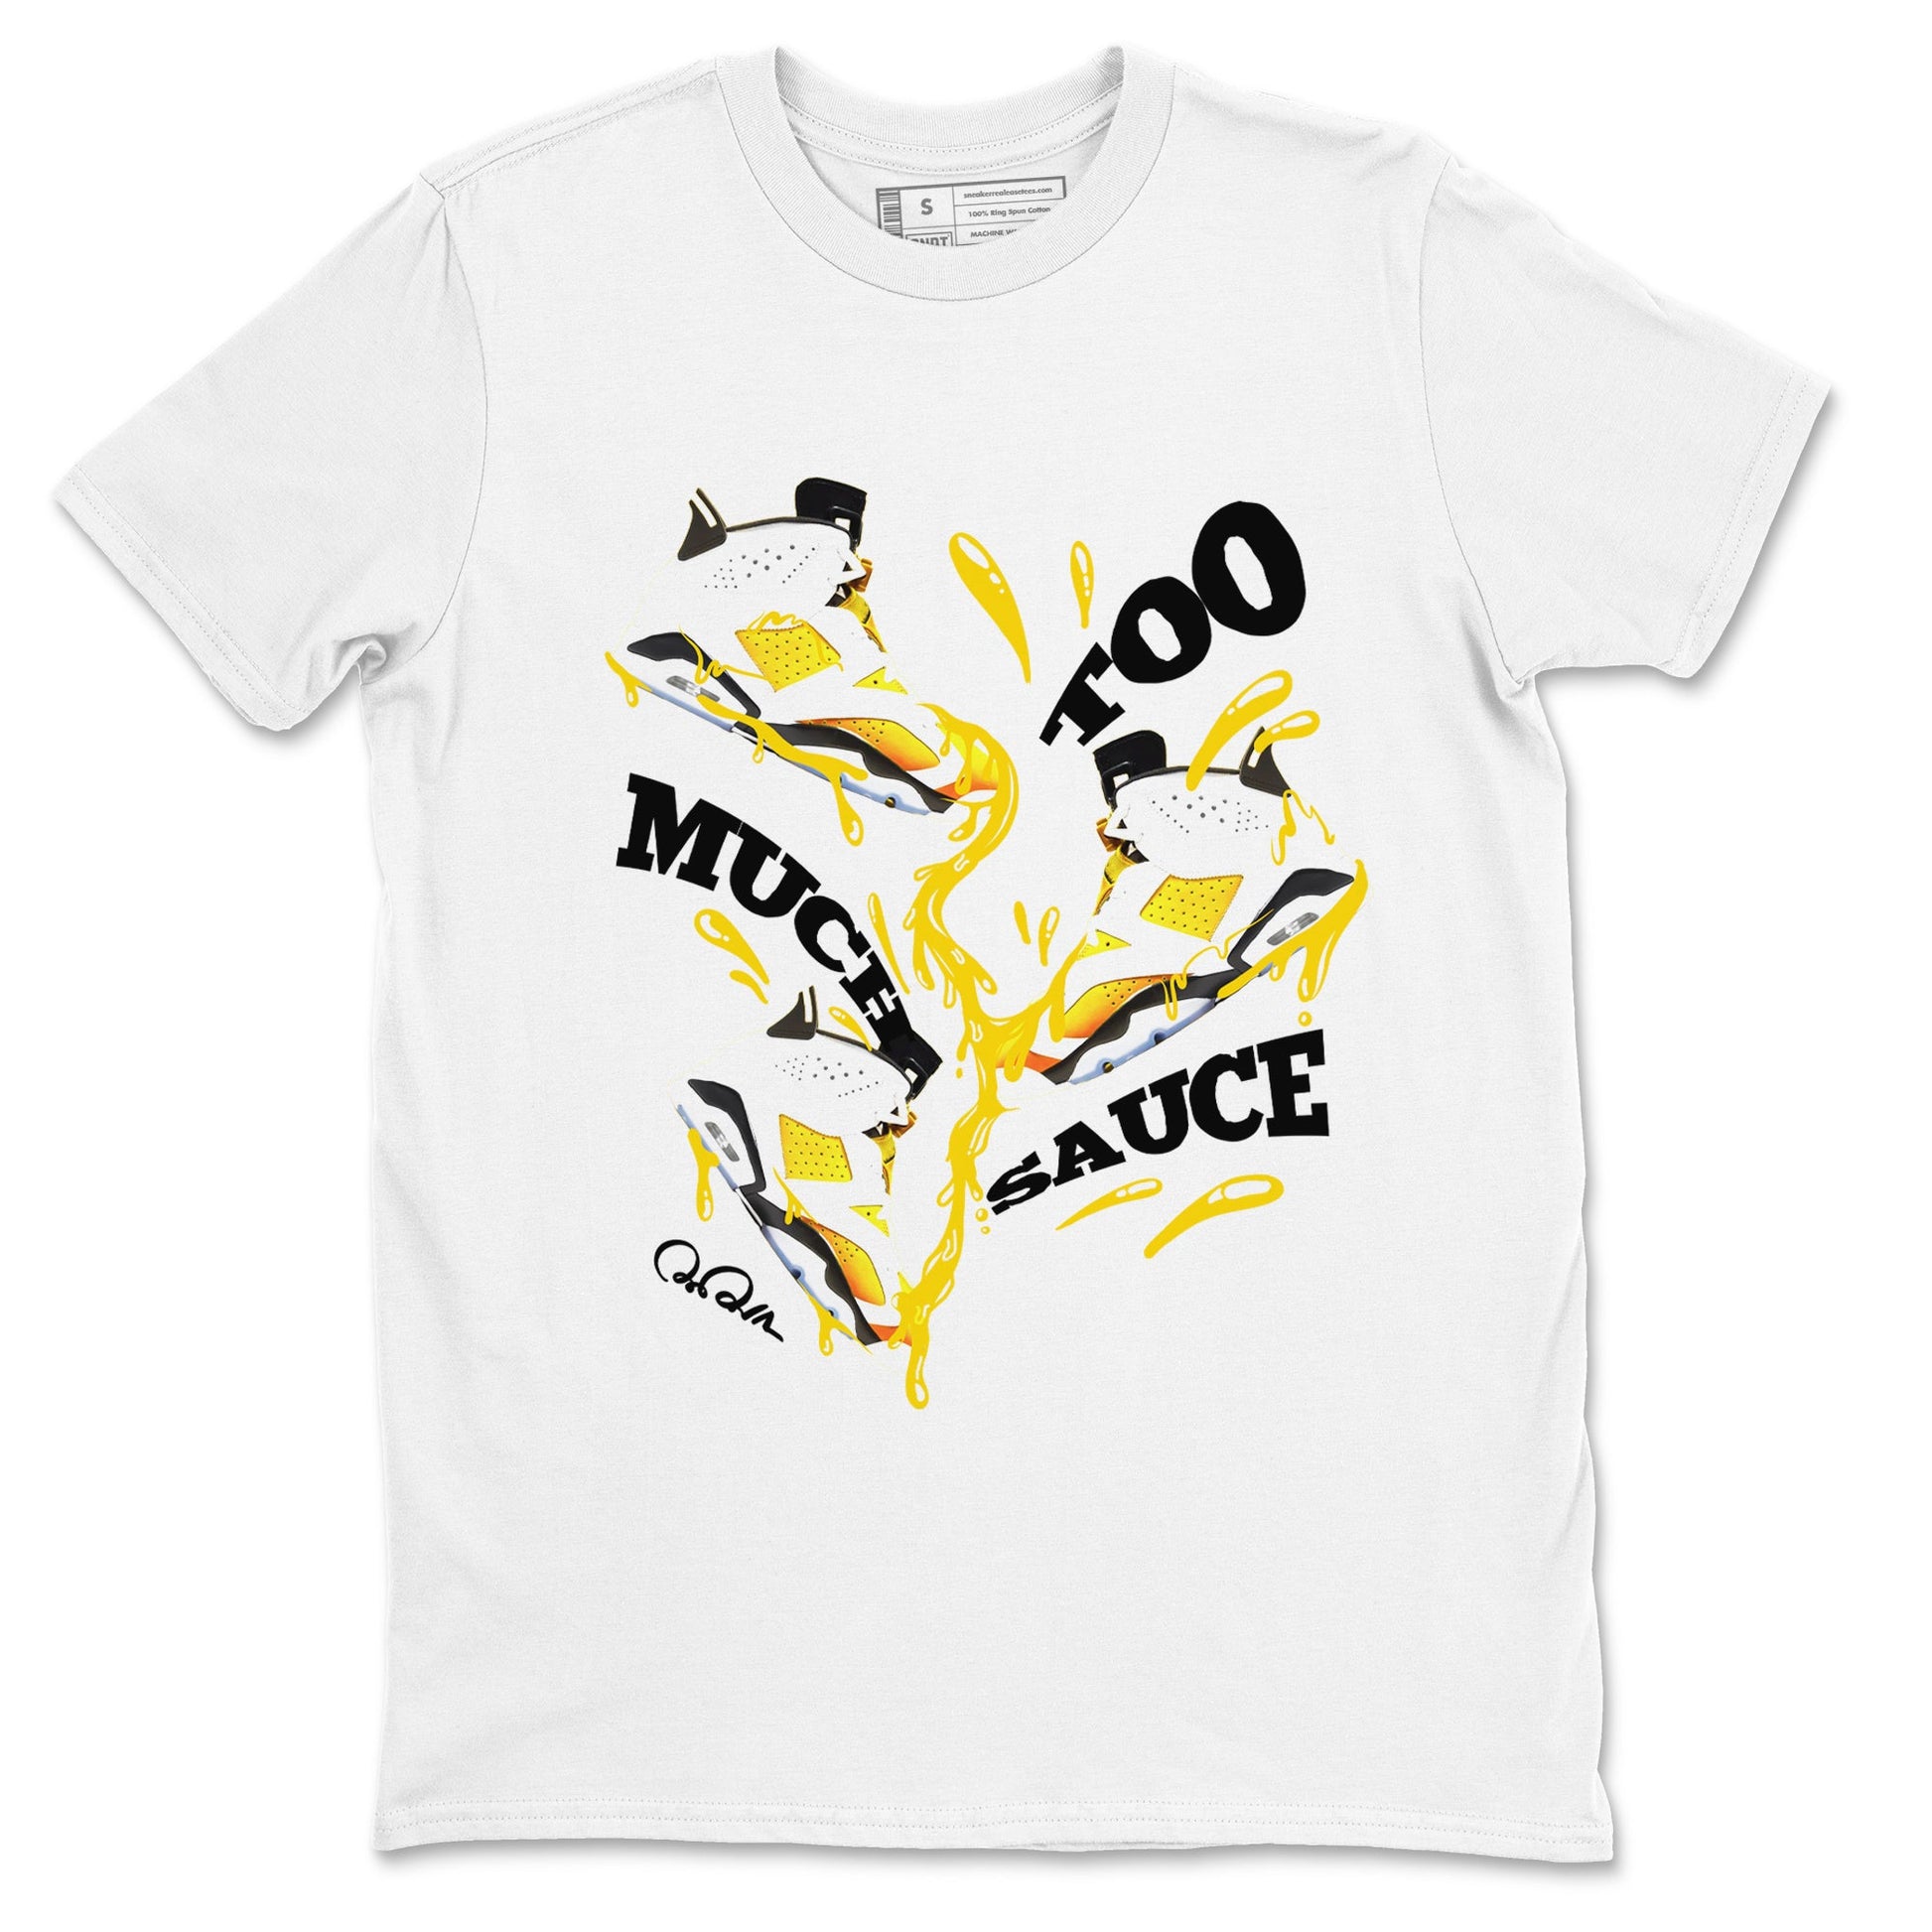 6s Yellow Ochre shirt to match jordans Too Much Sauce sneaker tees Air Jordan 6 Yellow Ochre SNRT Sneaker Release Tees Unisex White 2 T-Shirt